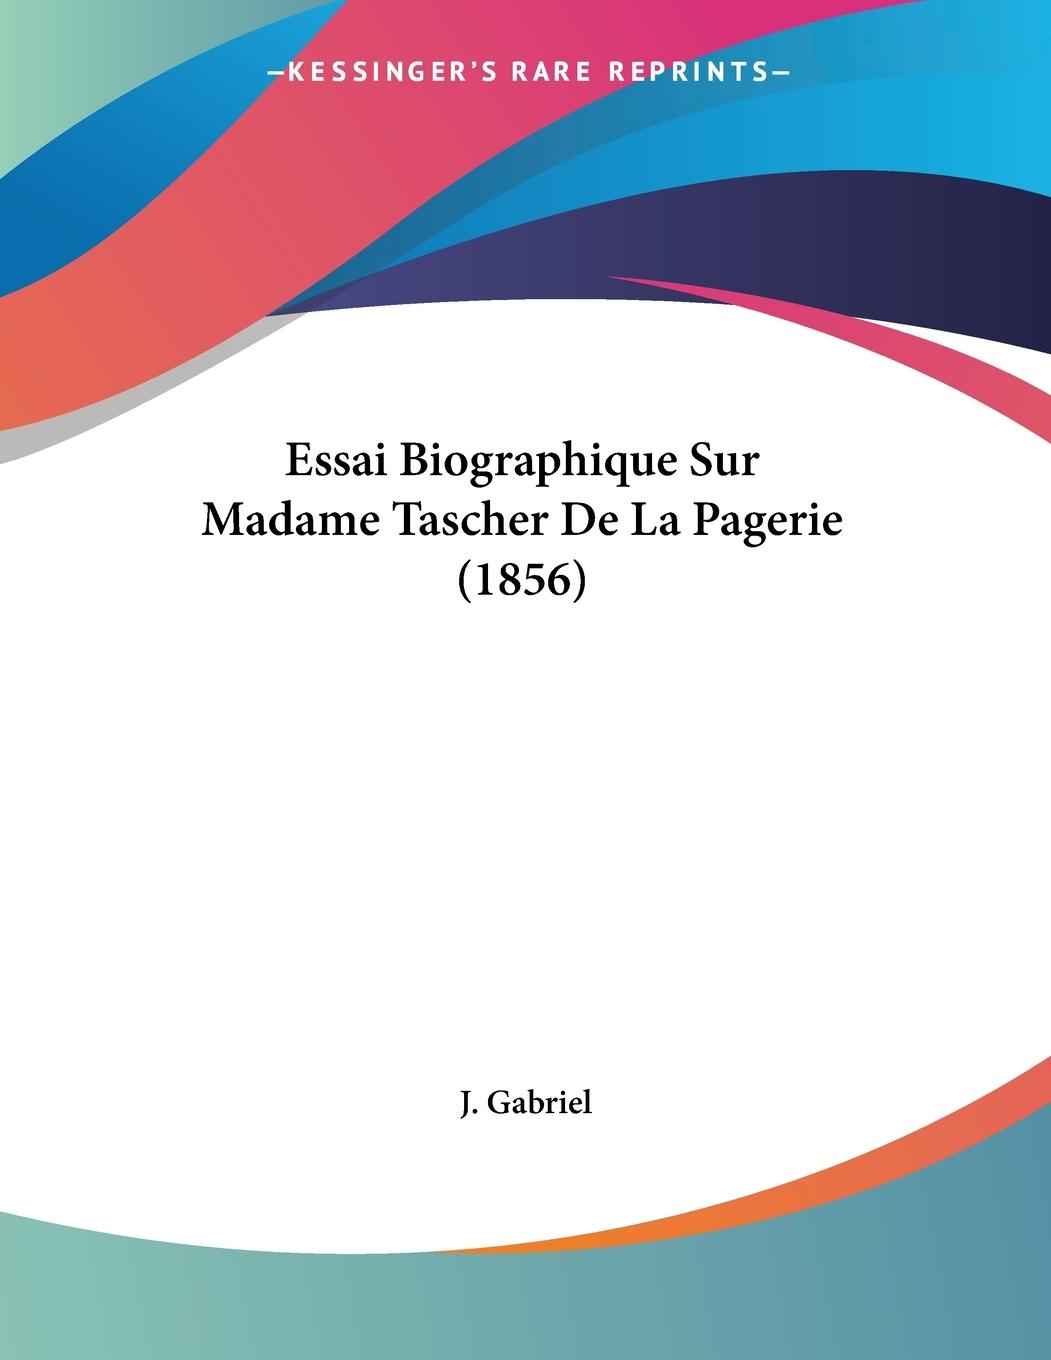 Essai Biographique Sur Madame Tascher De La Pagerie (1856) - Gabriel, J.